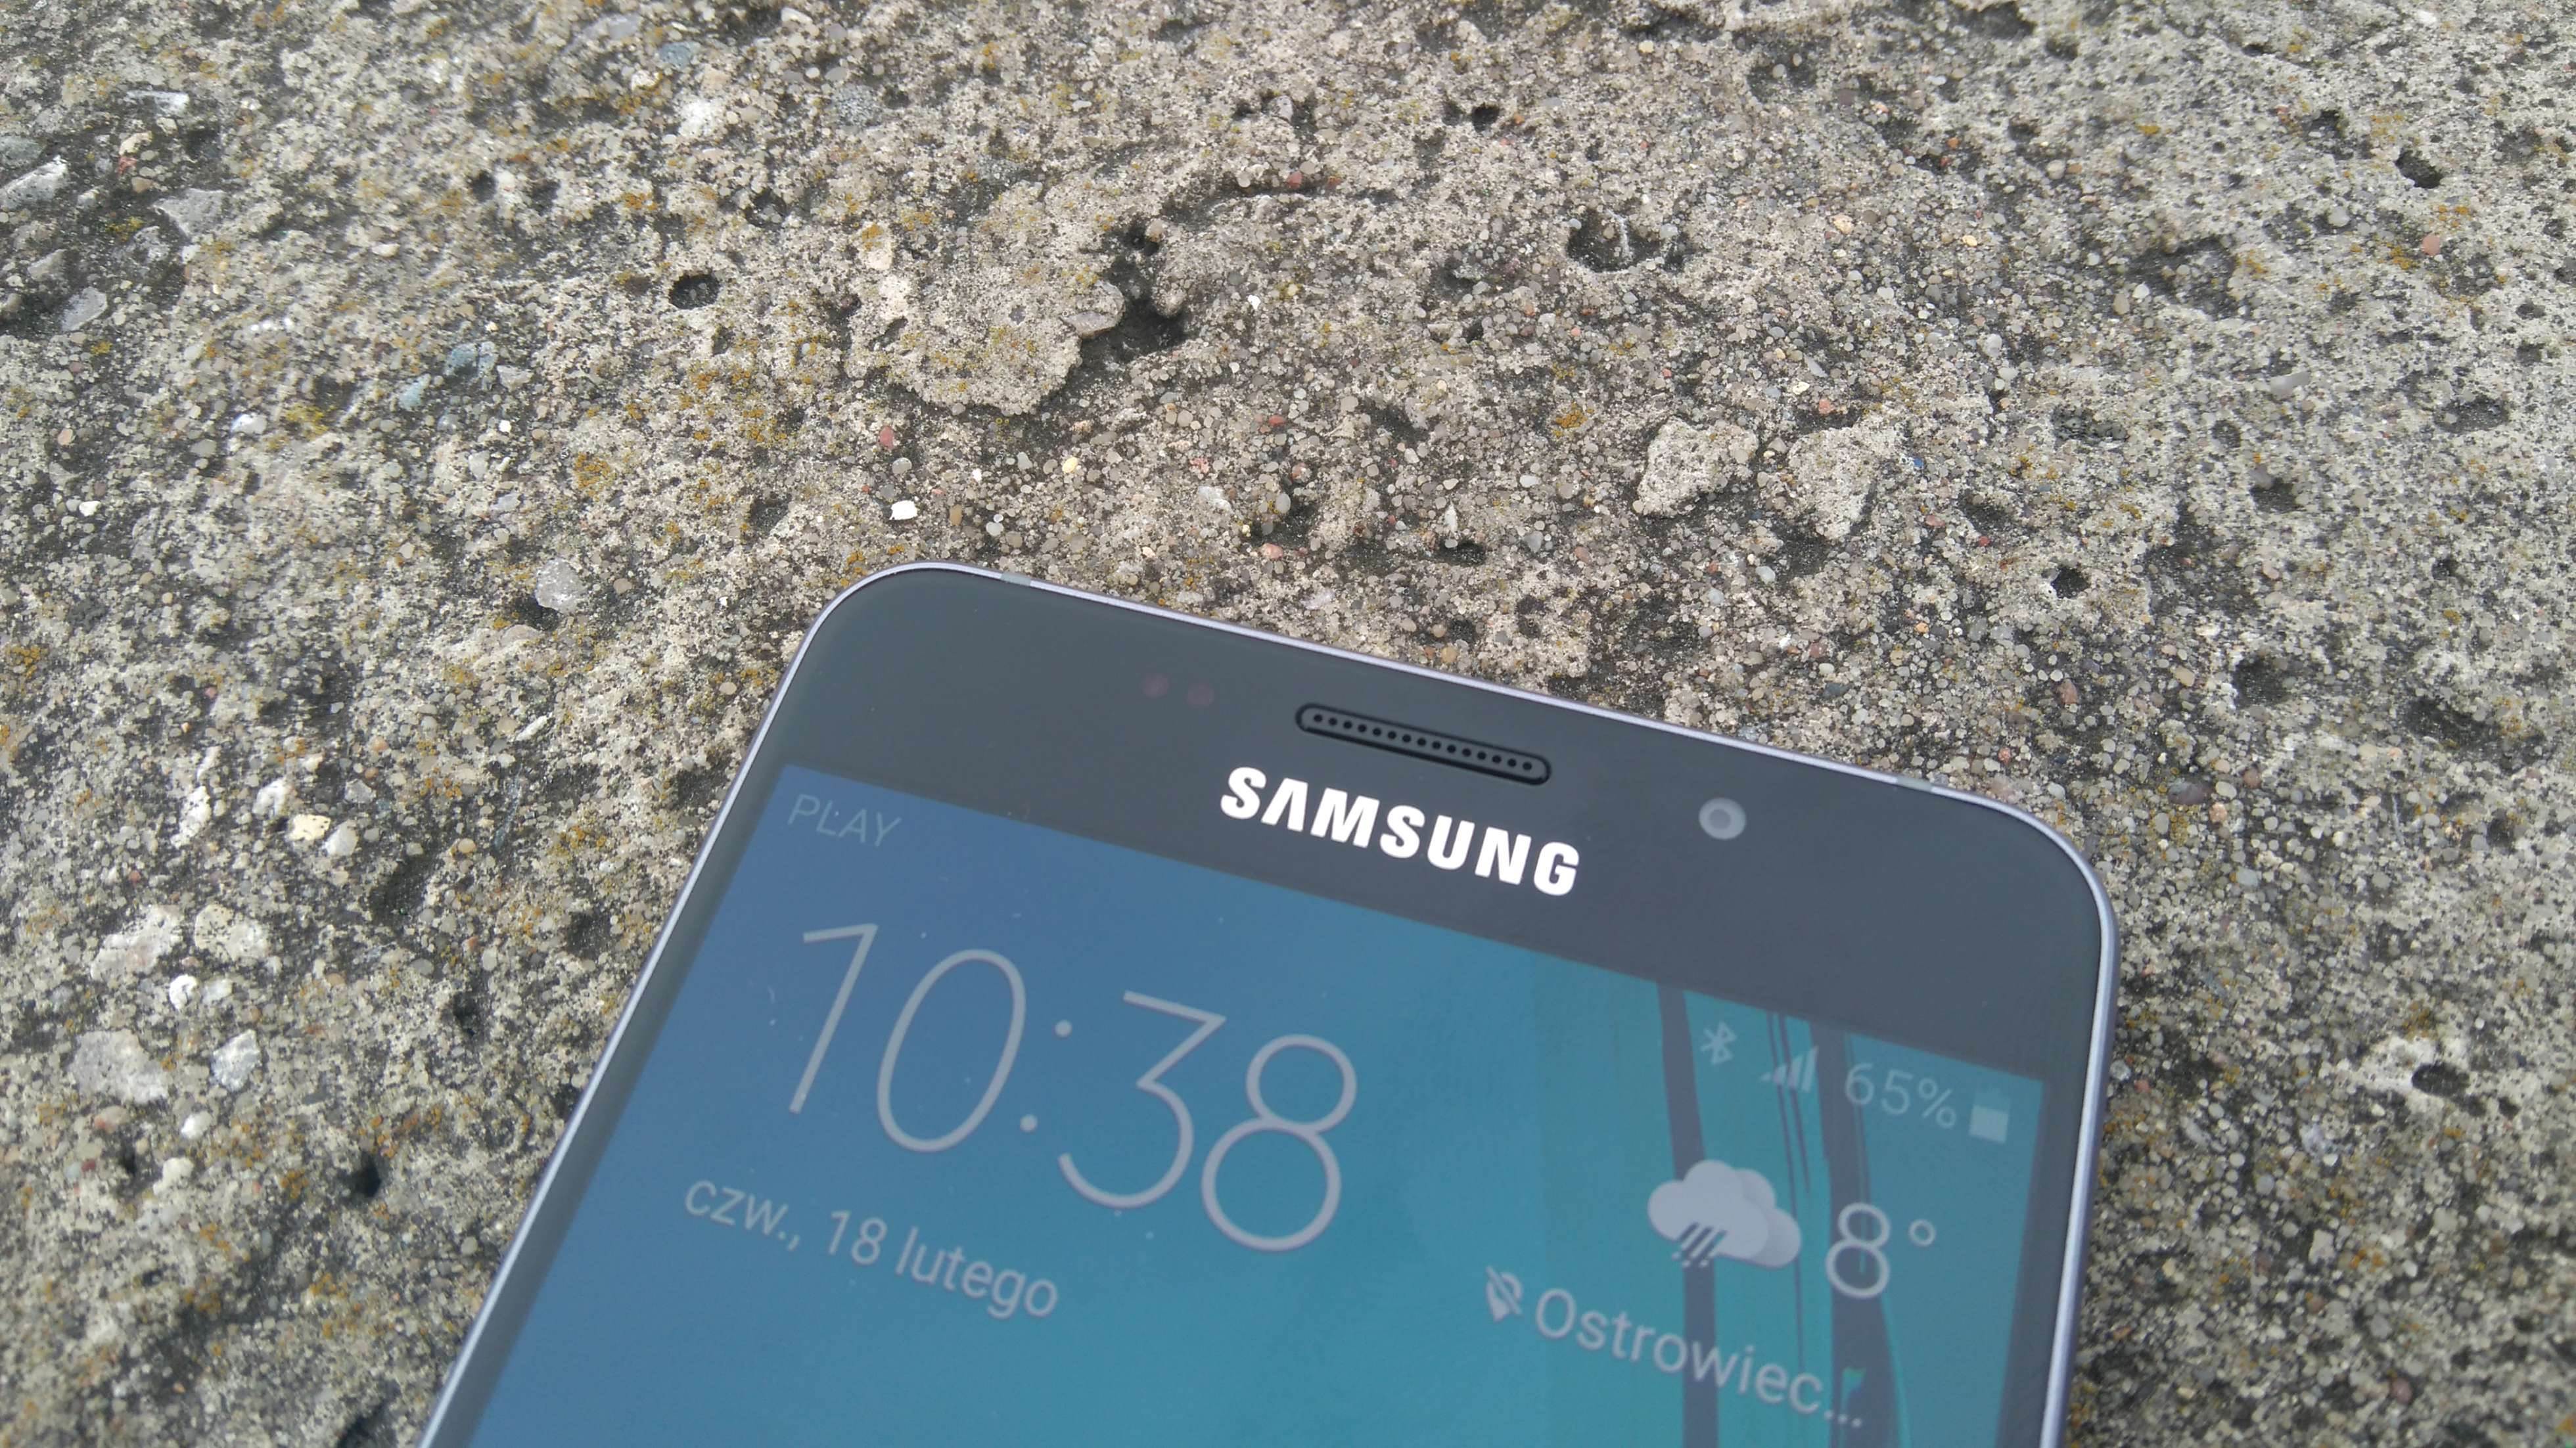 Samsung Galaxy A5 (2016) - recenzja urządzenia recenzje, polecane zalety, wady, Specyfikacja, Samsung Galaxy A5 2016, Samsung, recenzja Samsung Galaxy A5 (2016), Recenzja, polska recenzja, Opis, czy warto kupić Samsung Galaxy A5 (2016), cena, a5 z 2016, 2016  Samsung na nowo zapałał miłością do wysokiej jakości wykonania swoich mobilnych produktów, czego dowodem jest tegoroczna seria A. DSC 0012